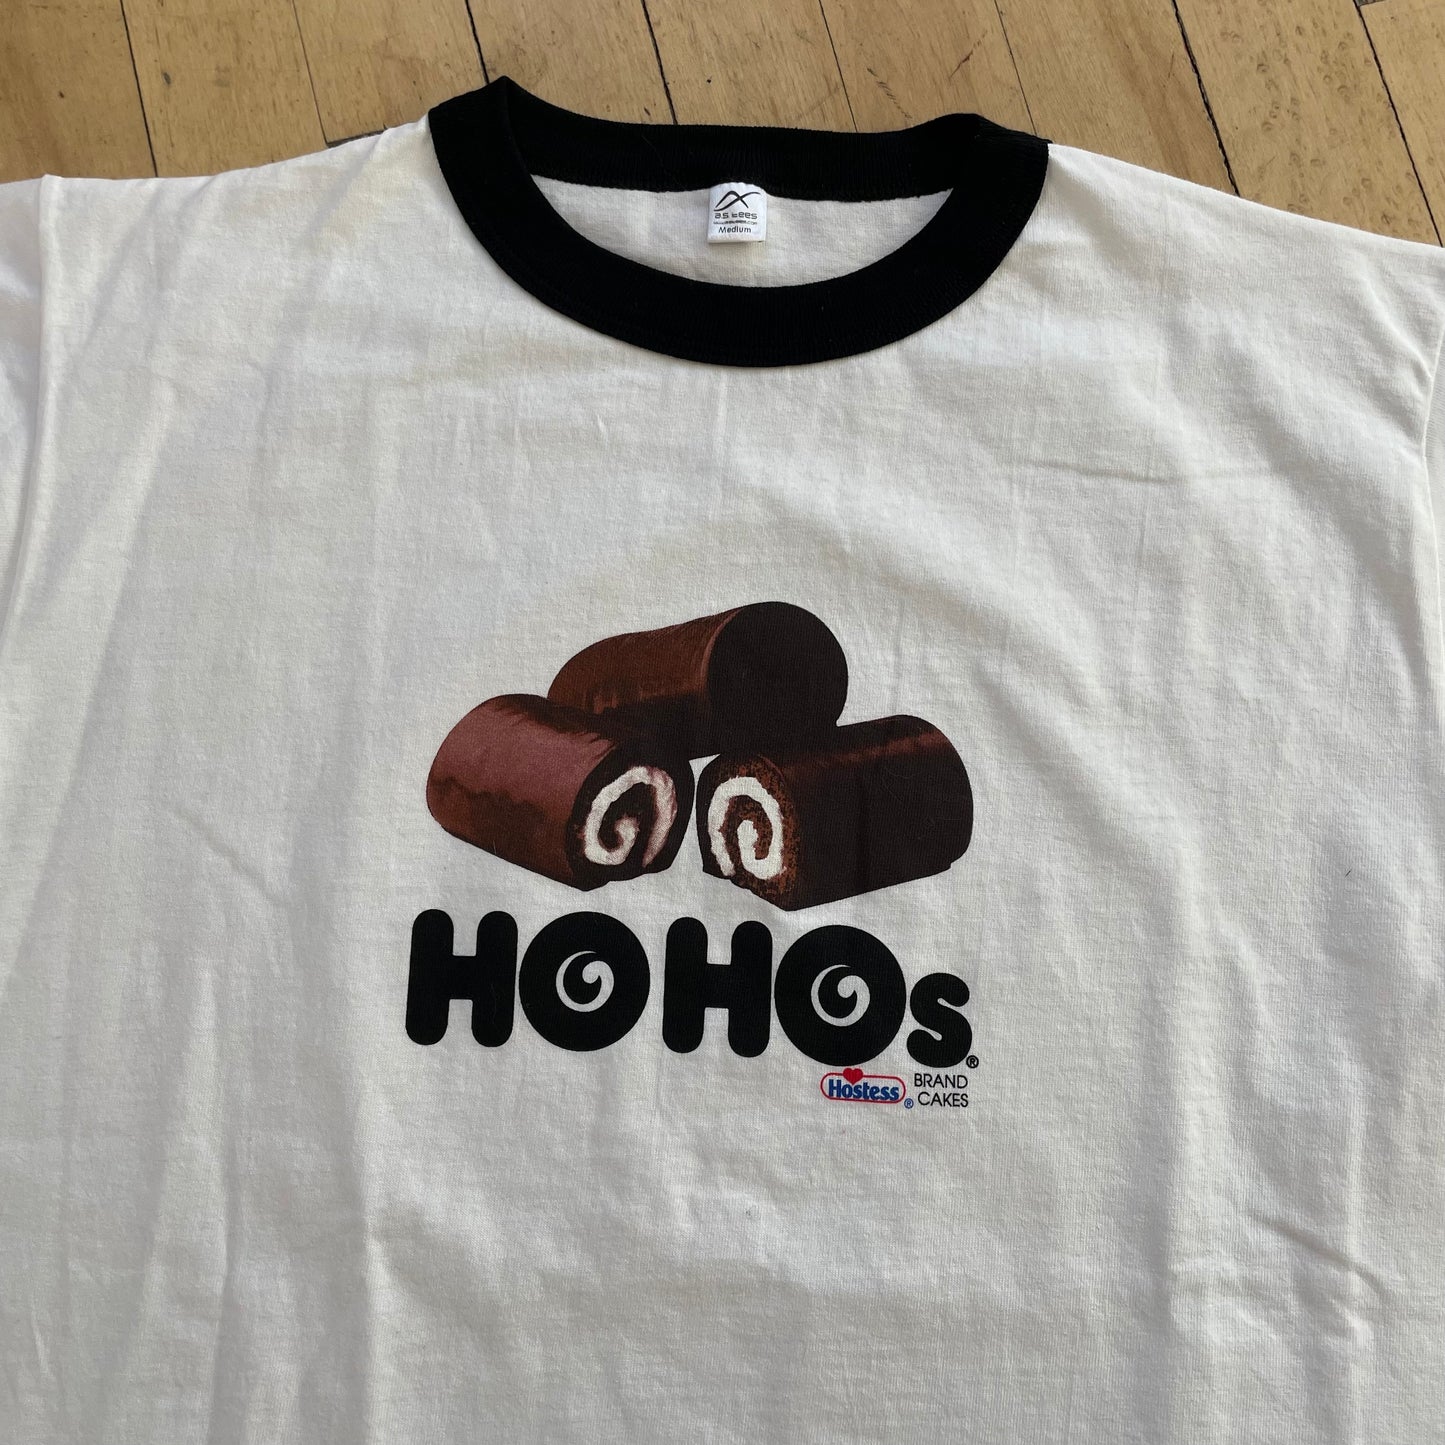 2000s Hostess Cakes Ho Ho’s T-shirt Sz M